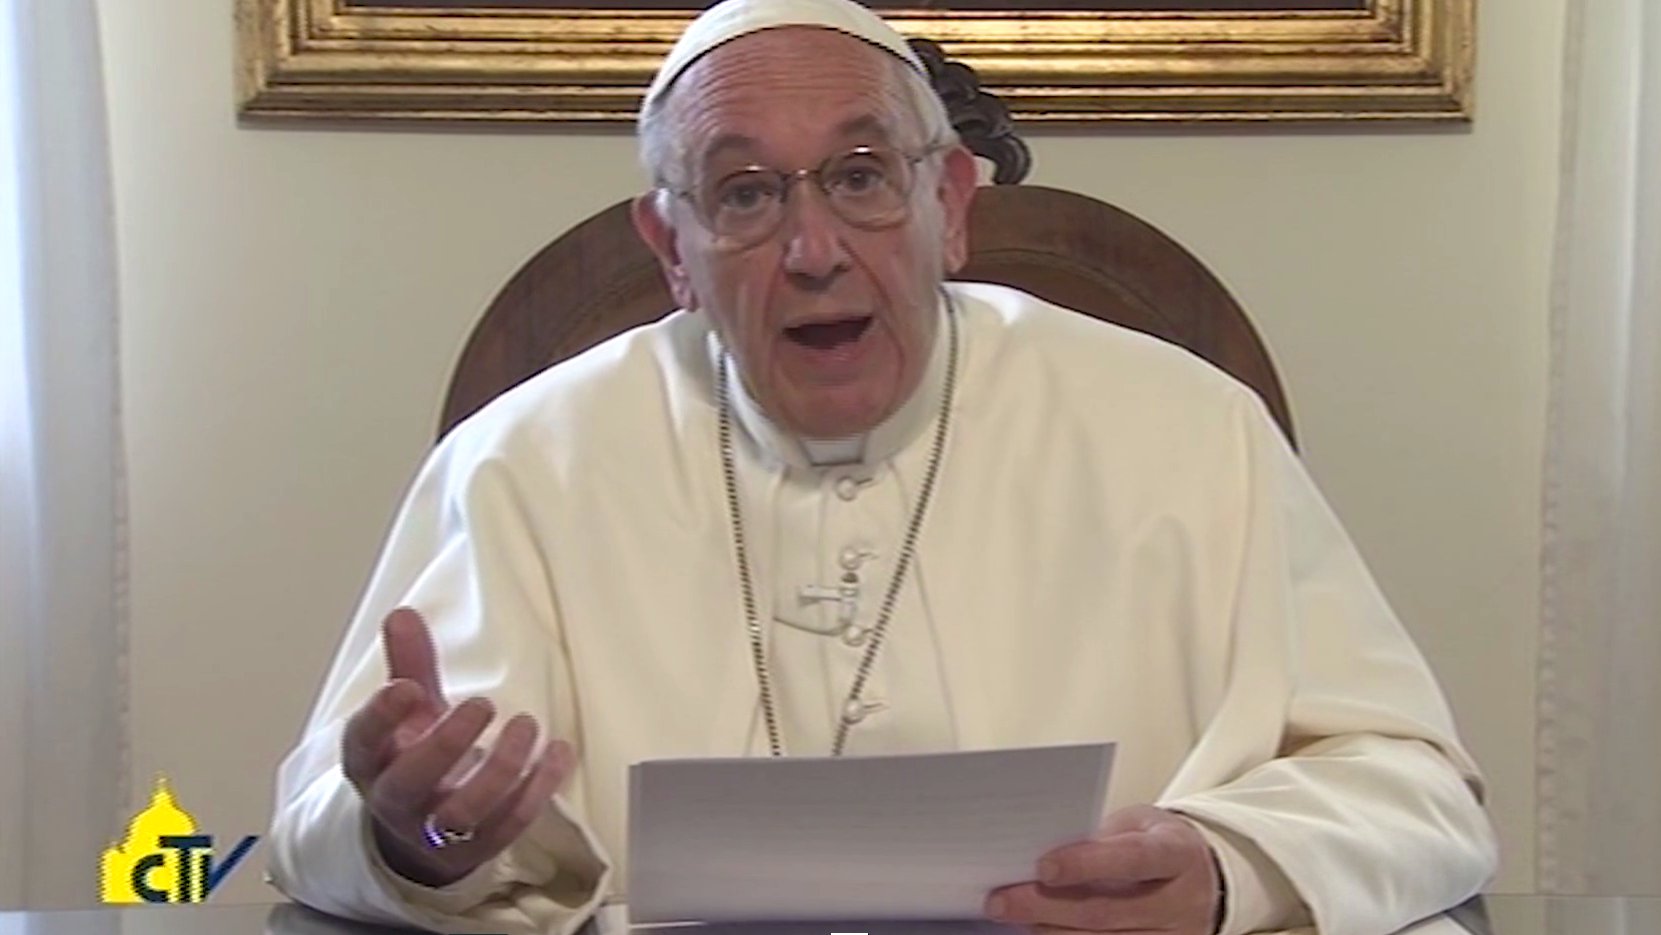 Papst Franziskus sendet Videobotschaft zum 100. Katholikentag